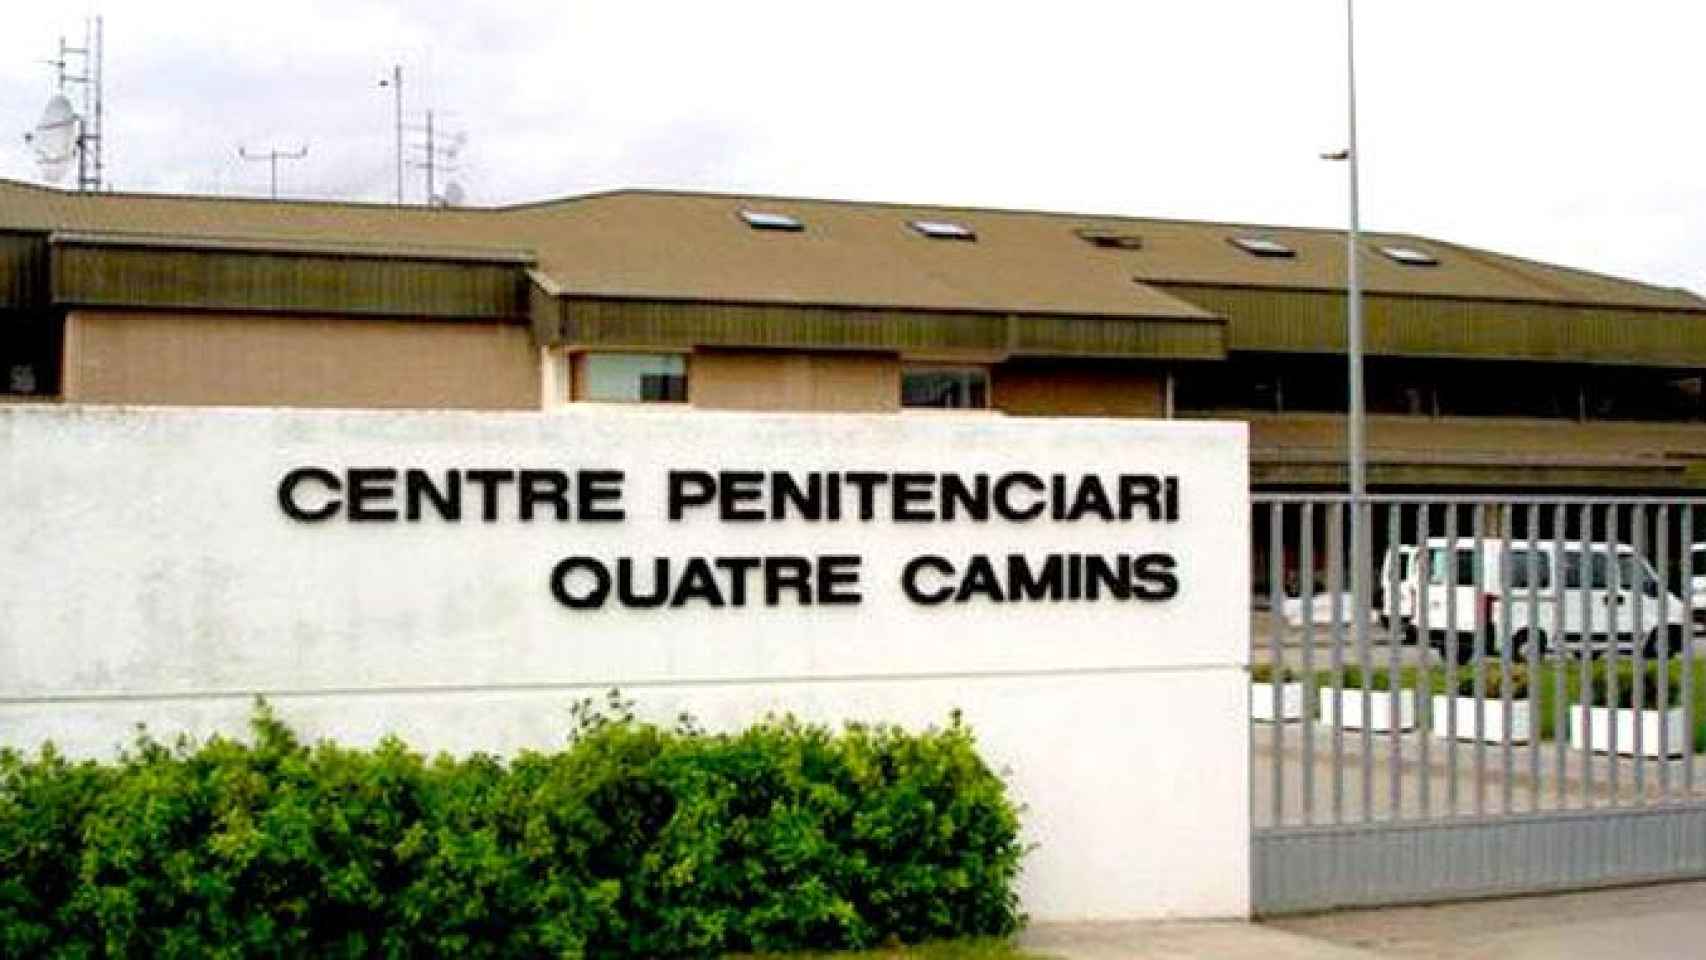 La cárcel catalana de Quatre Camins en la Roca del Vallès / CG